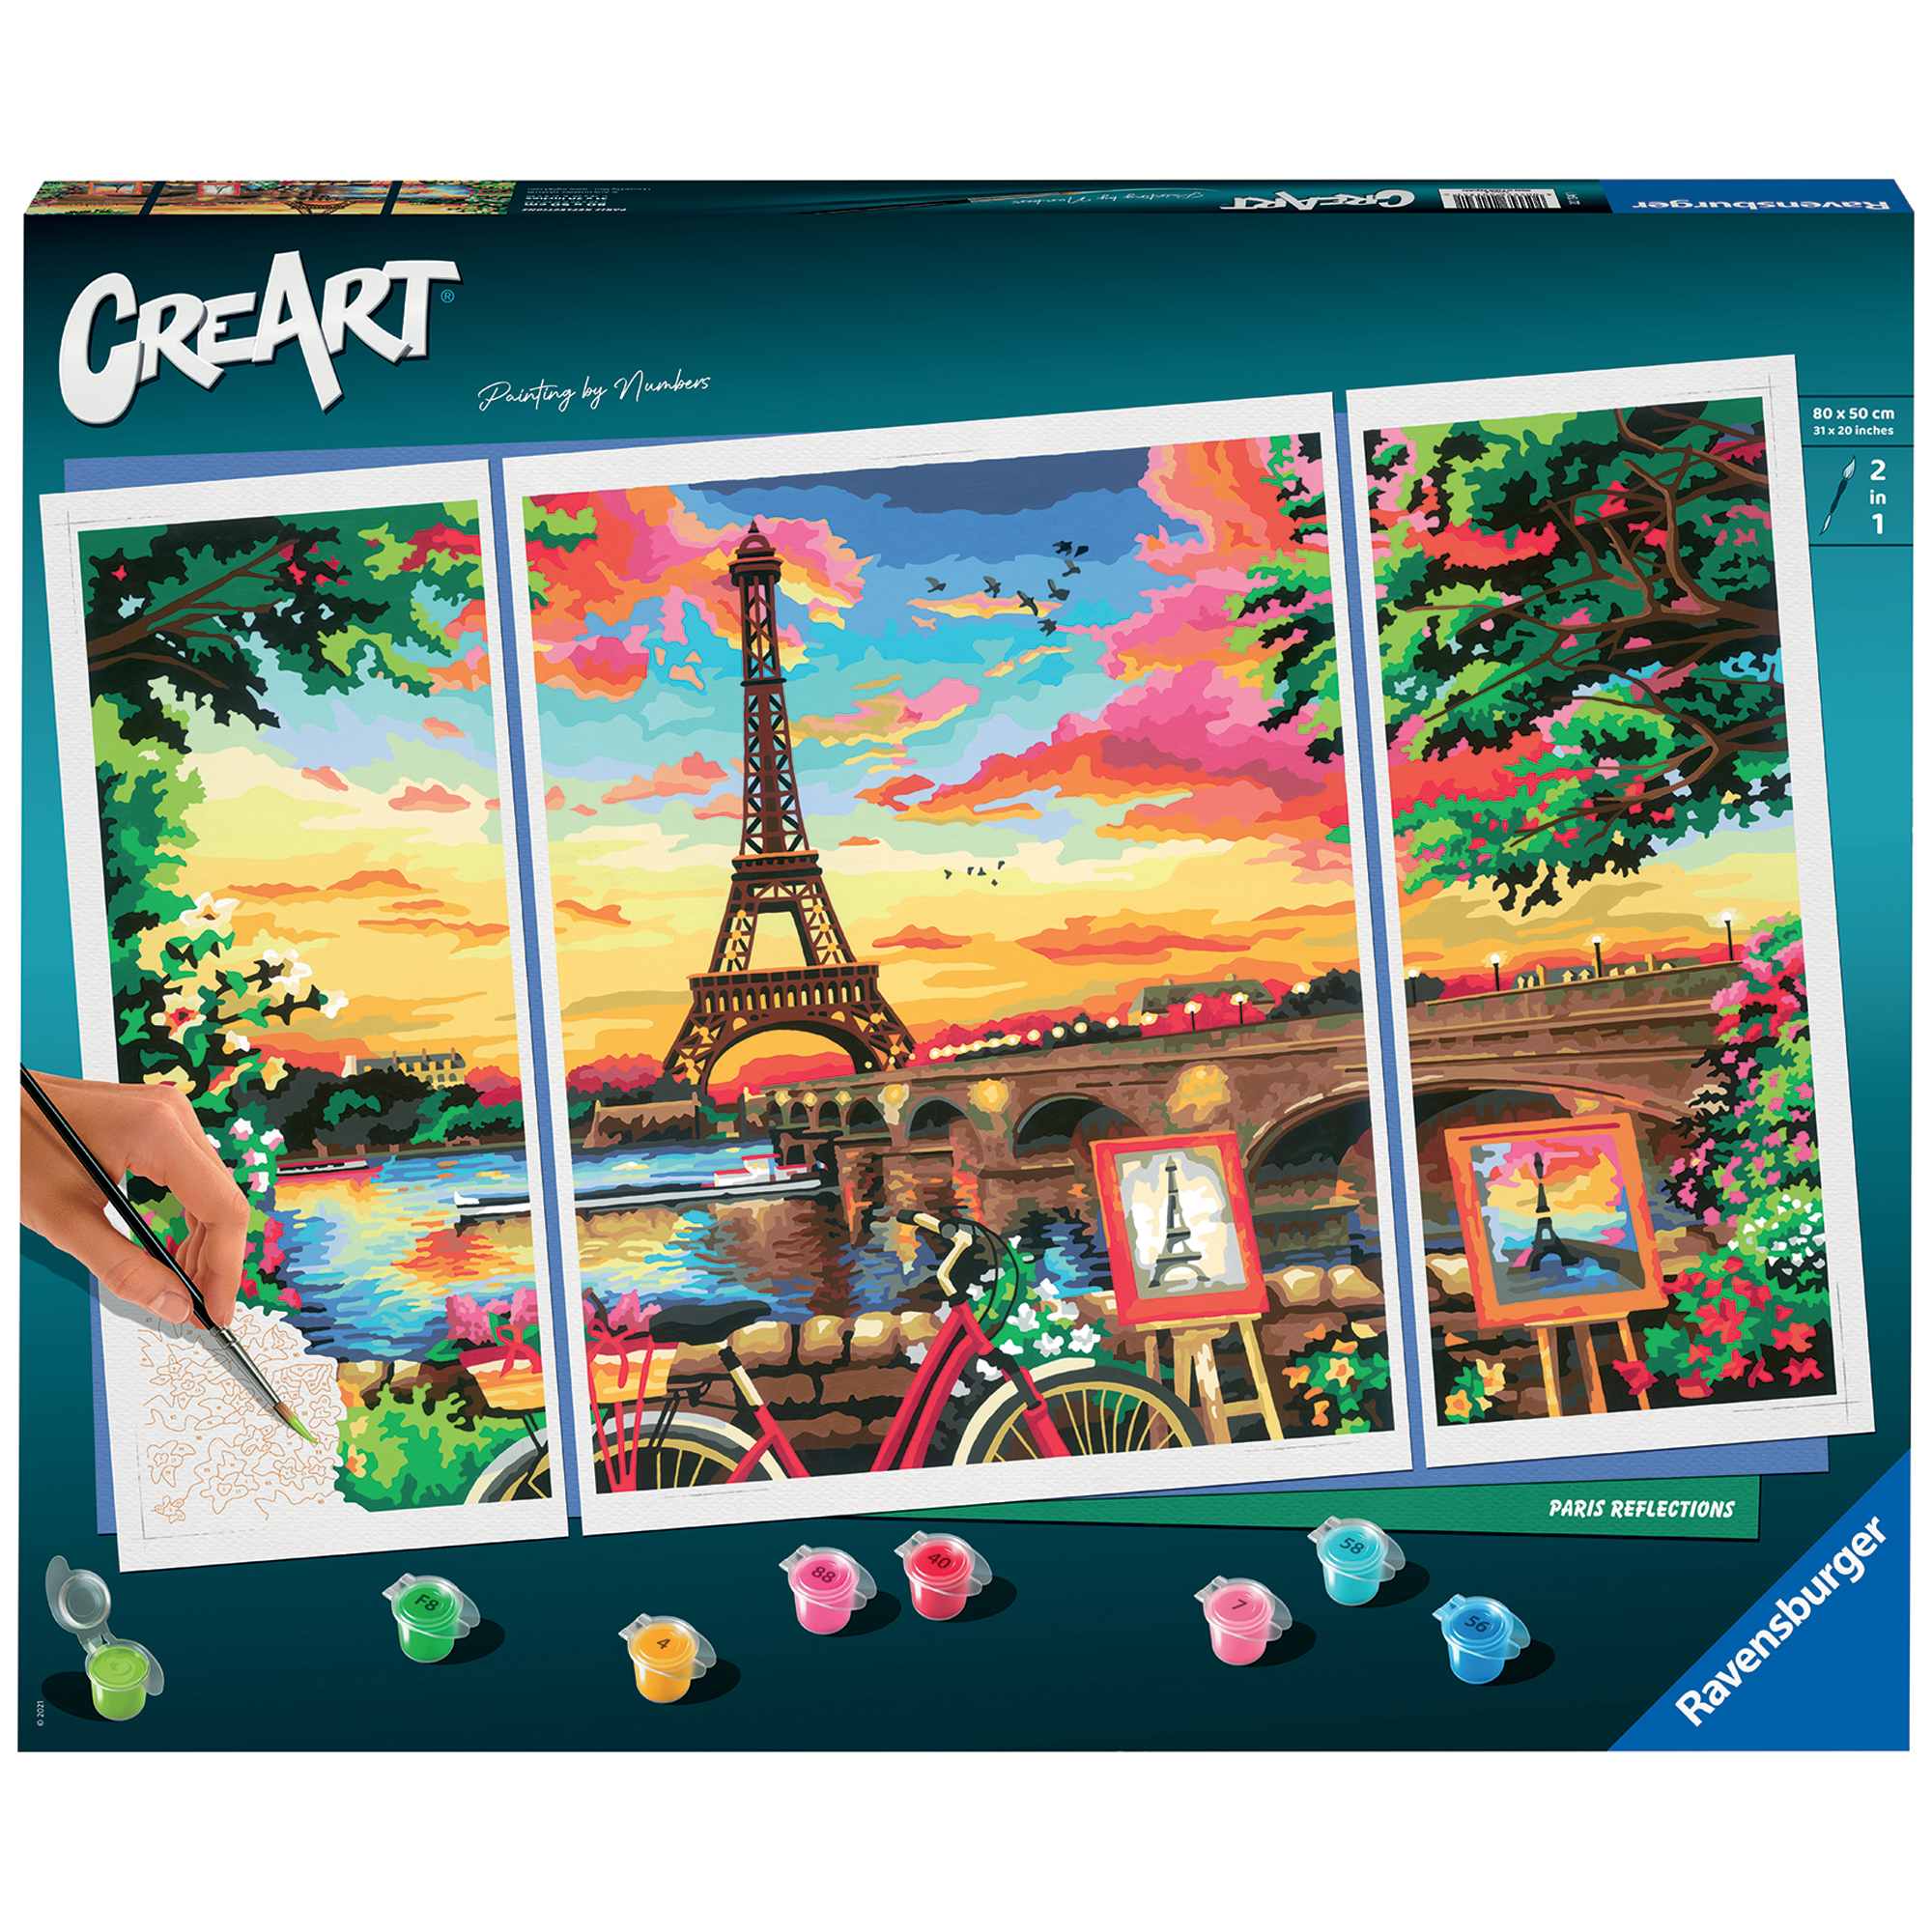 Creart Paris Reflections, Serie Premium trittico, Kit per dipingere con i numeri - Creart